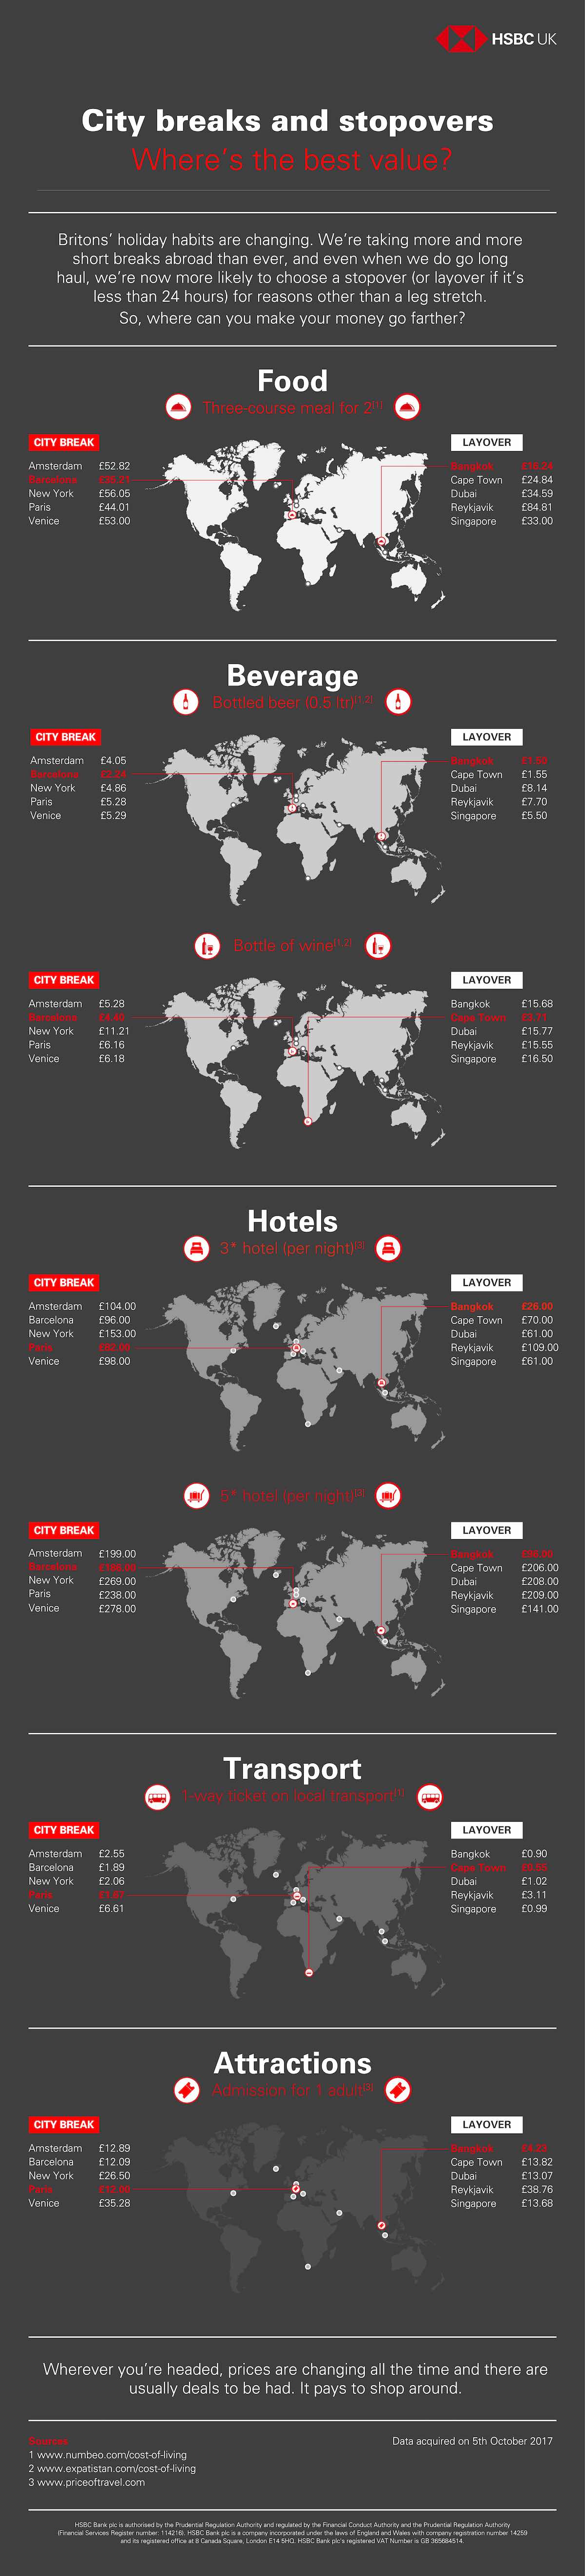 HSBC City Breaks Infographic